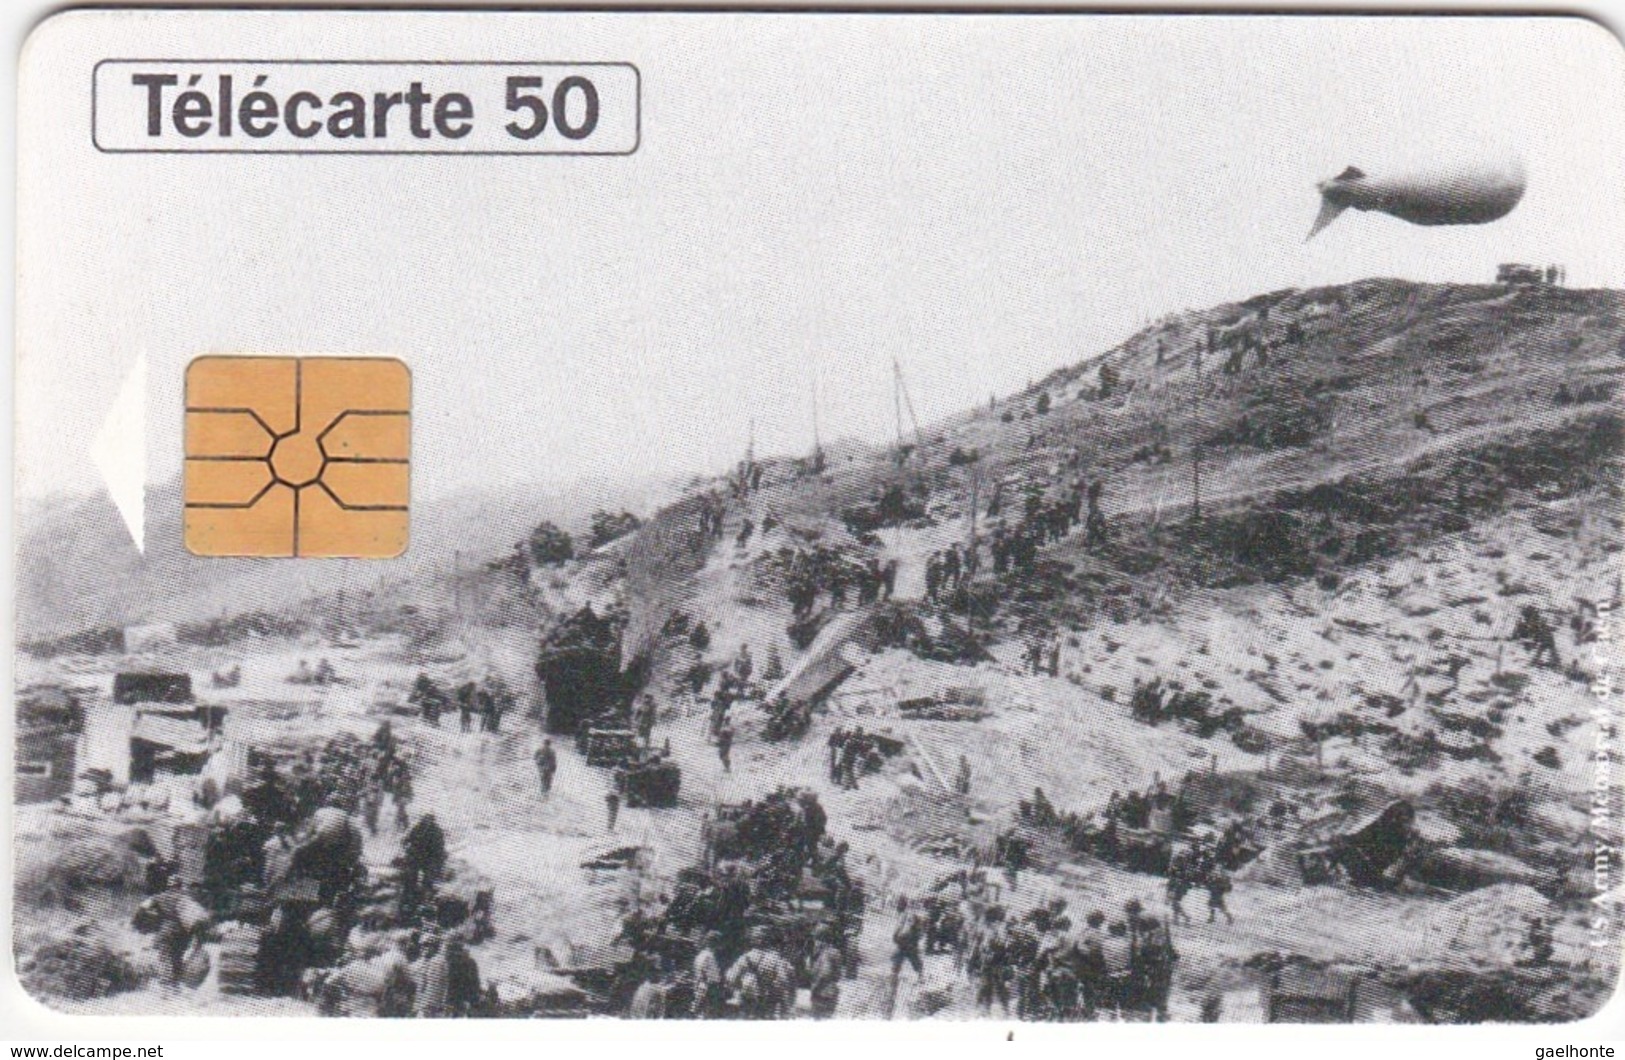 TC119 TÉLÉCARTE 50 UNITÉS - 1944-1994 - 50ème ANNIVERSAIRE DES DEBARQUEMENTS... - OMAHA BEACH 10 JUIN 1944 - Armada